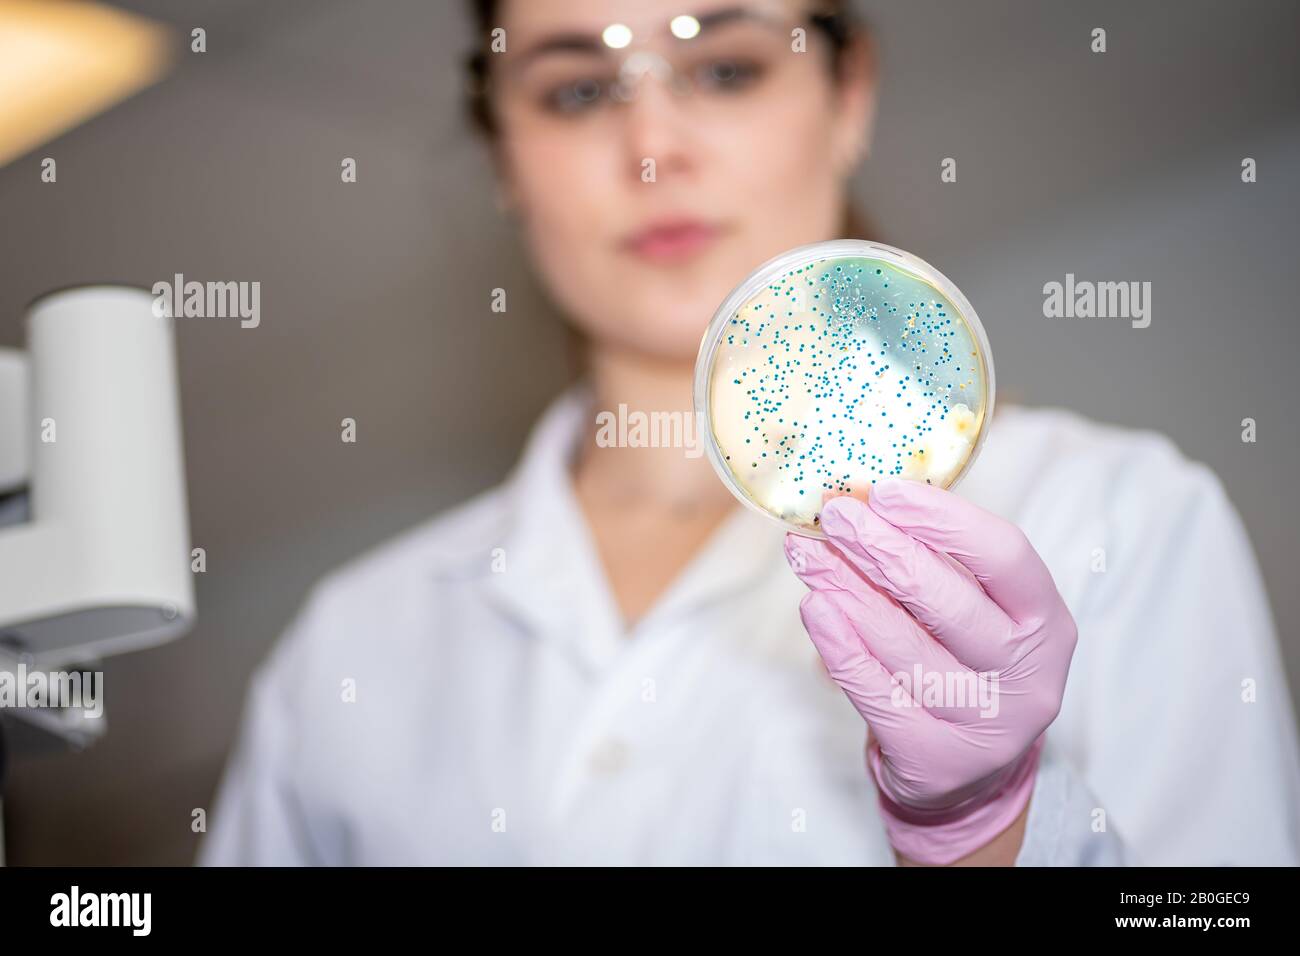 Chercheur travaillant en laboratoire de microbiologie avec plaque de culture bactérienne Banque D'Images